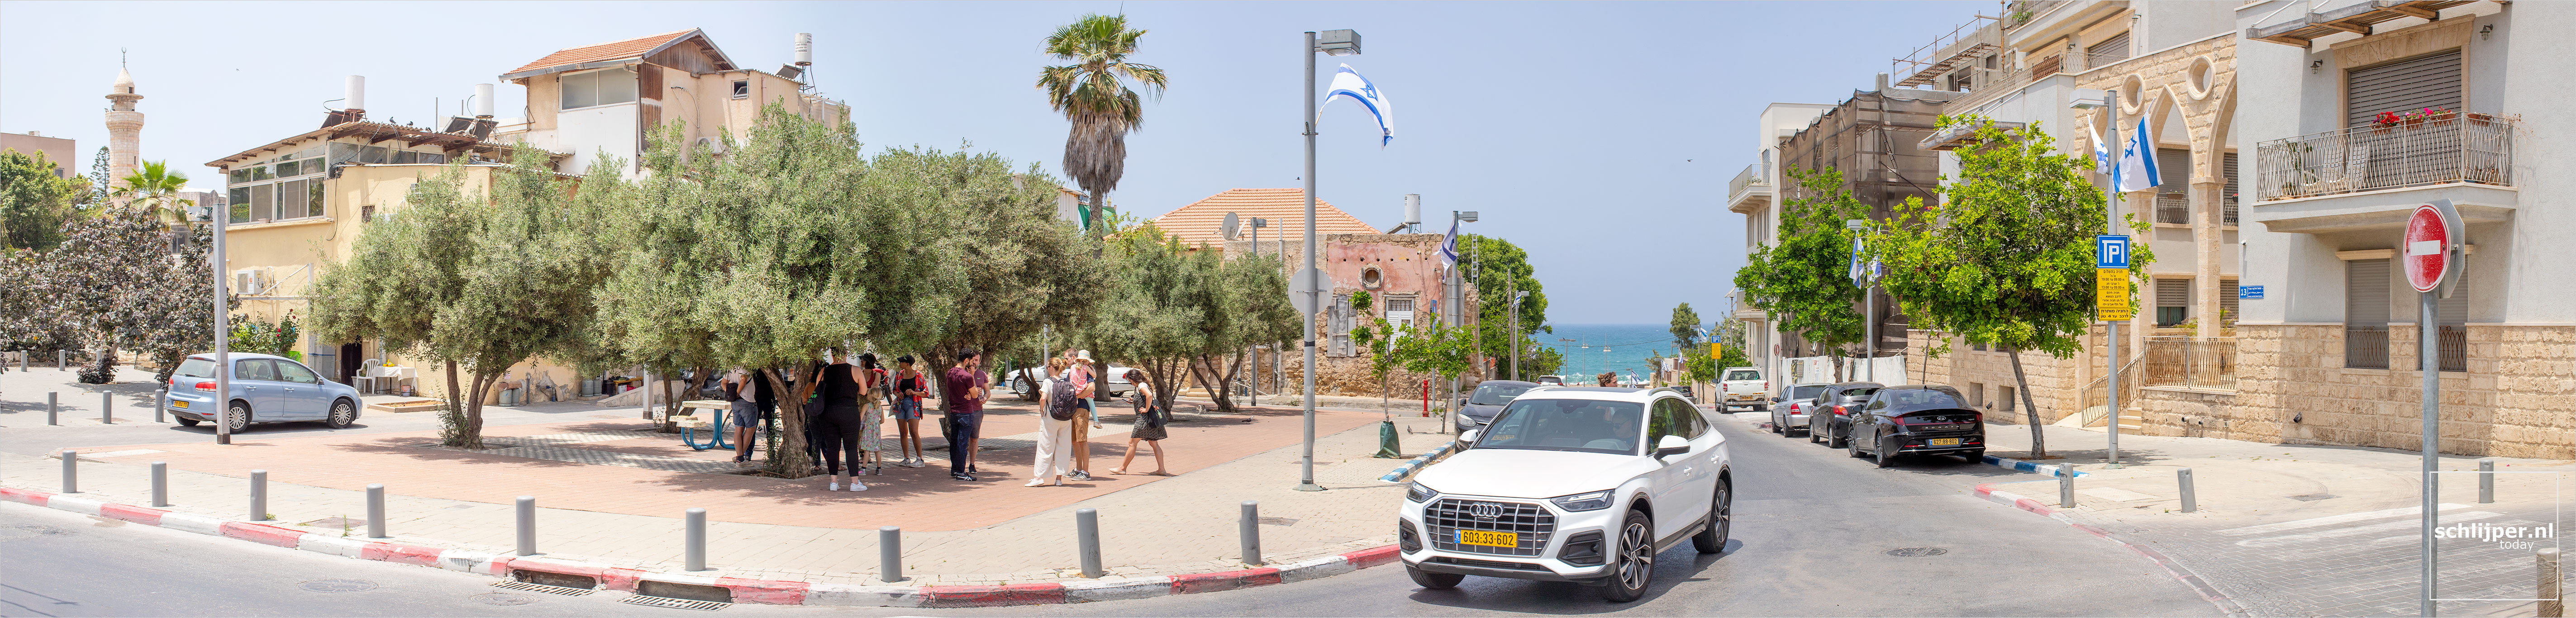 Israel, Jaffa, 15 mei 2022